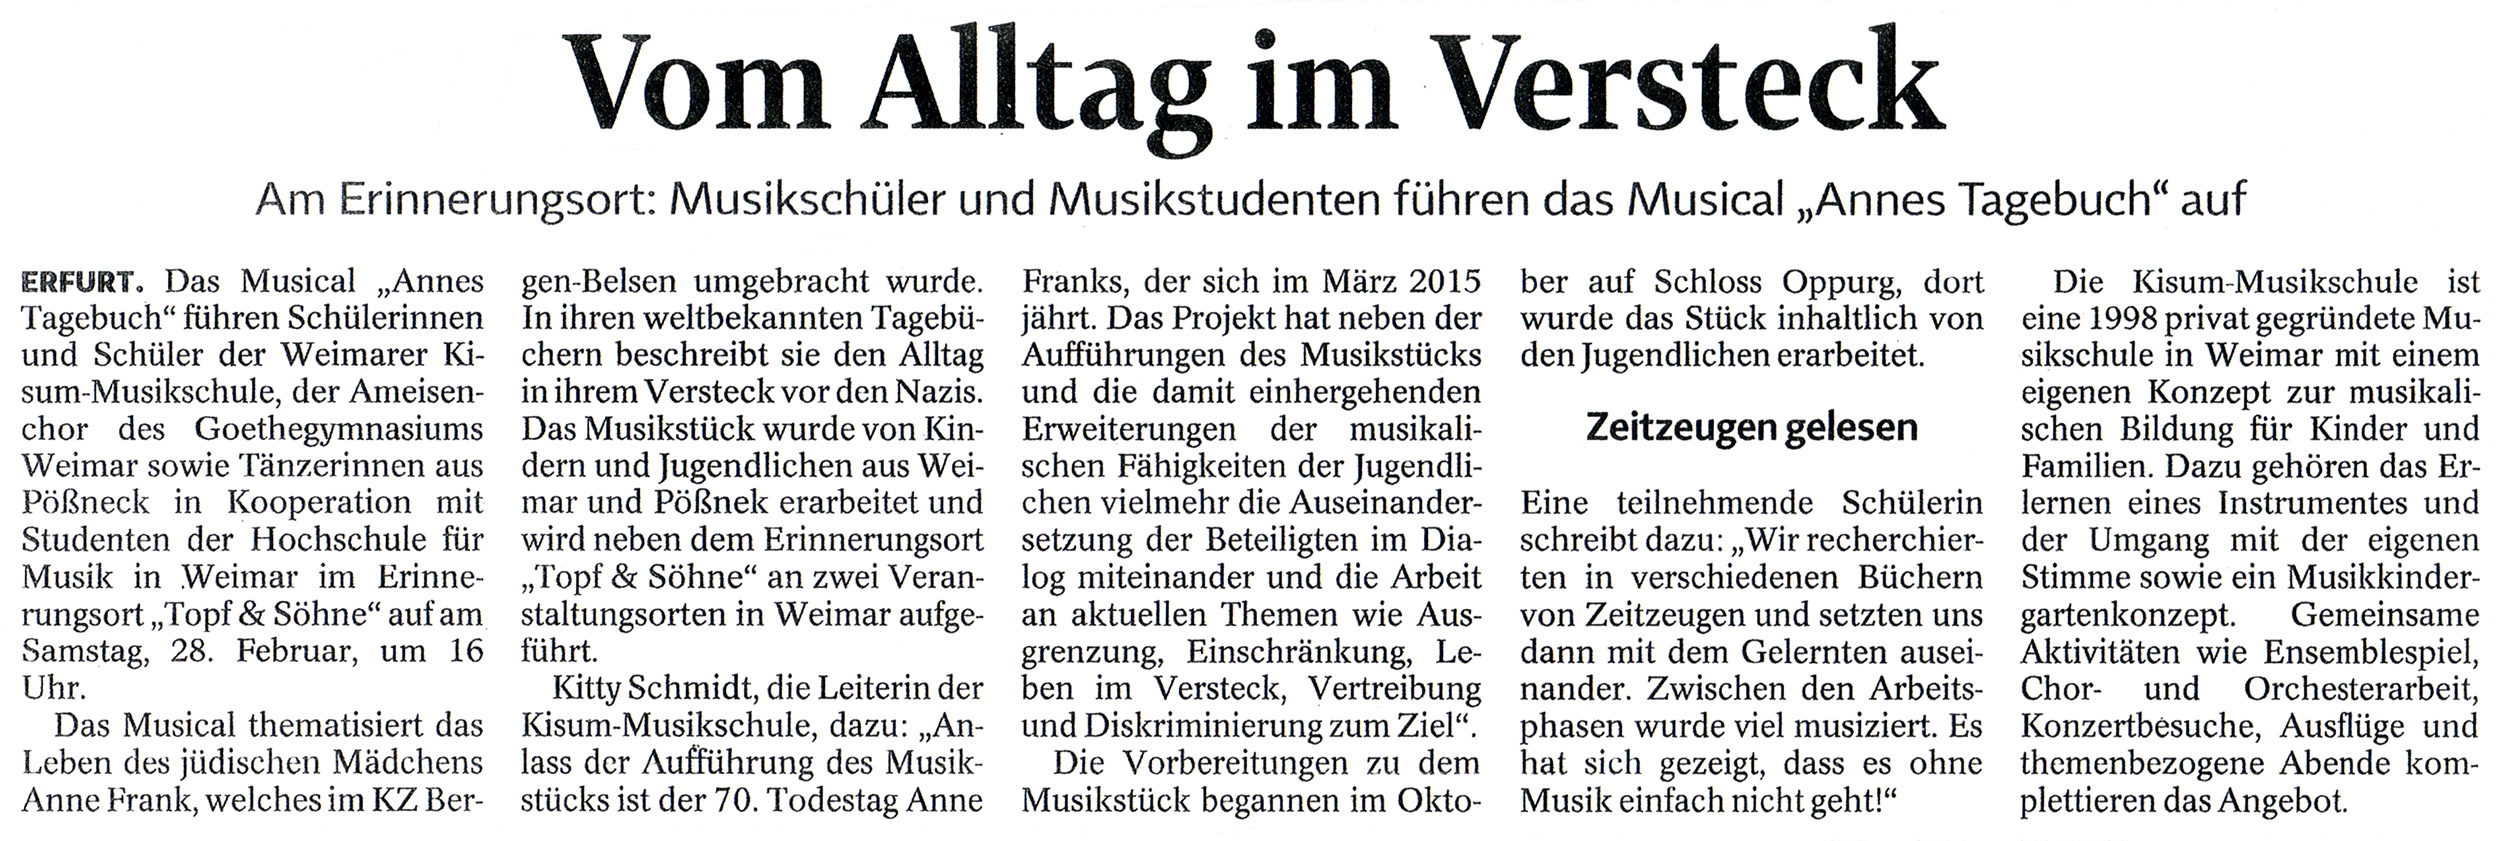 16.02.2015, Thüringische Landeszeitung